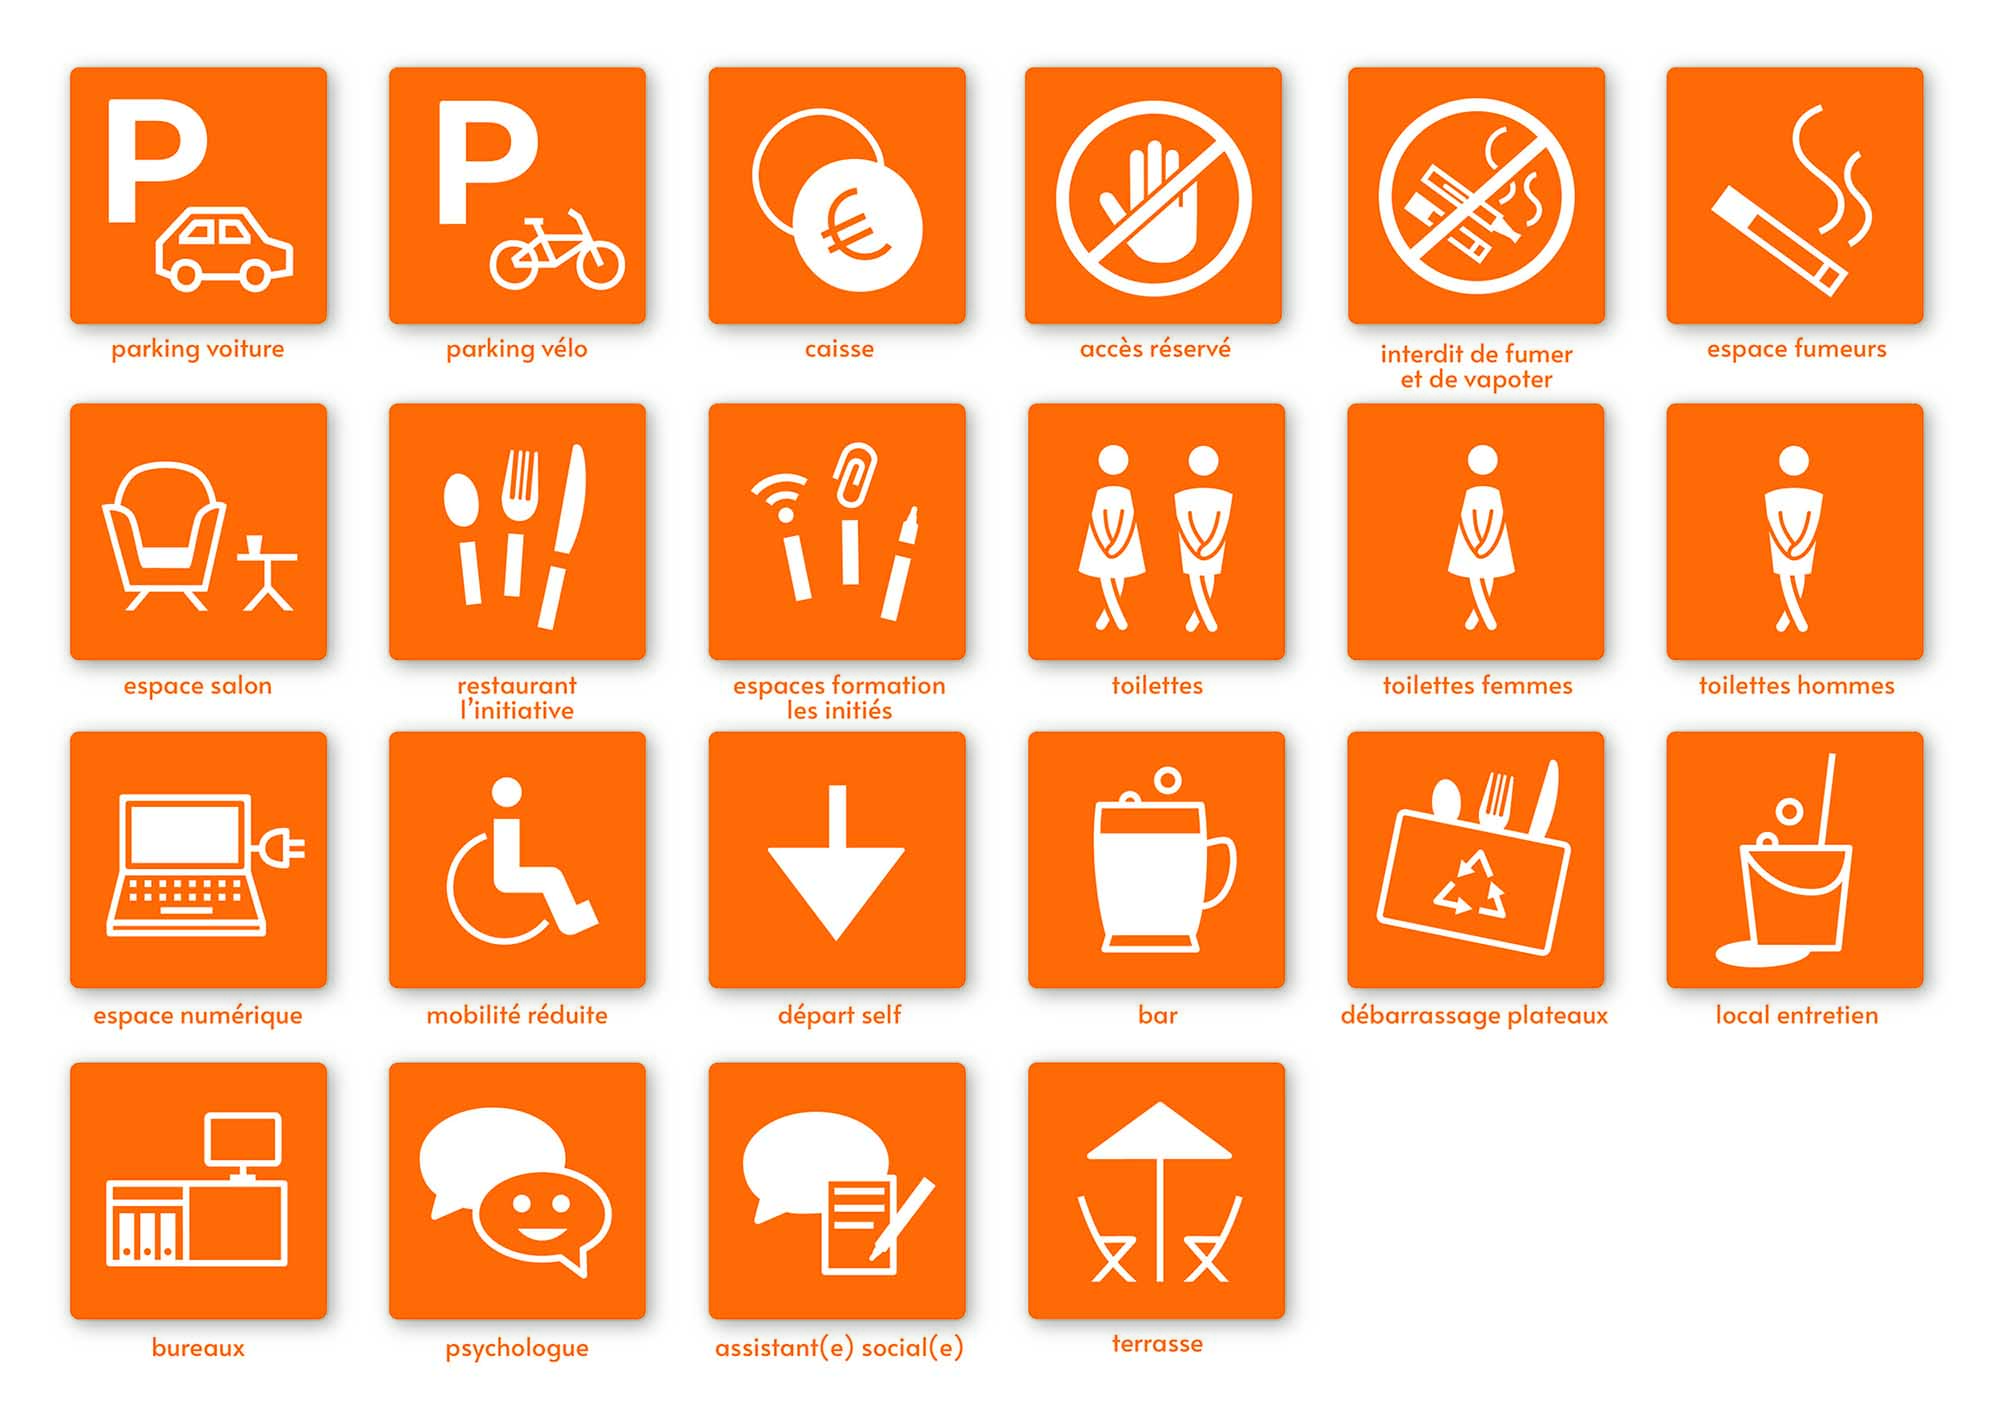 Collection de pictogrammes créés pour le restaurant L'Initiative, version orange